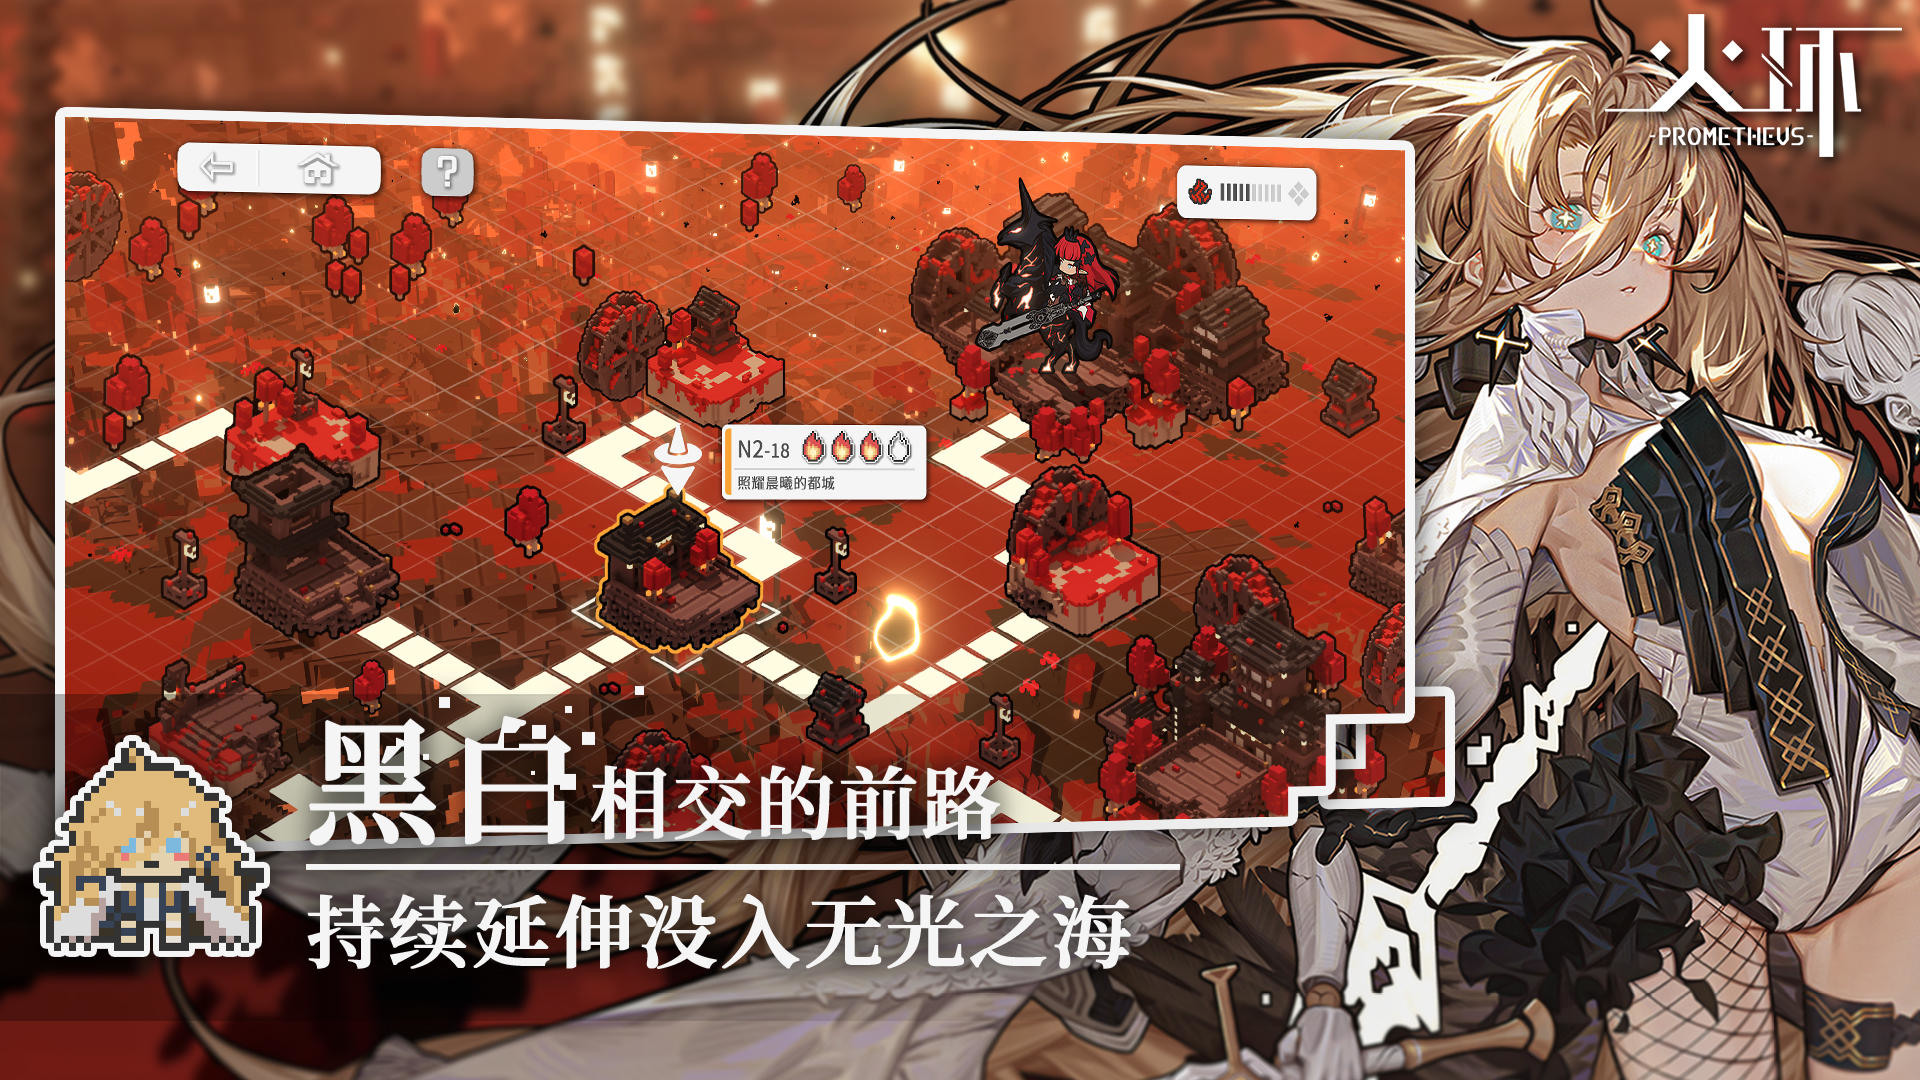 像素風格橫向動作遊戲《火環 Prometheus》於中國開放事前預約 釋出首部宣傳影片